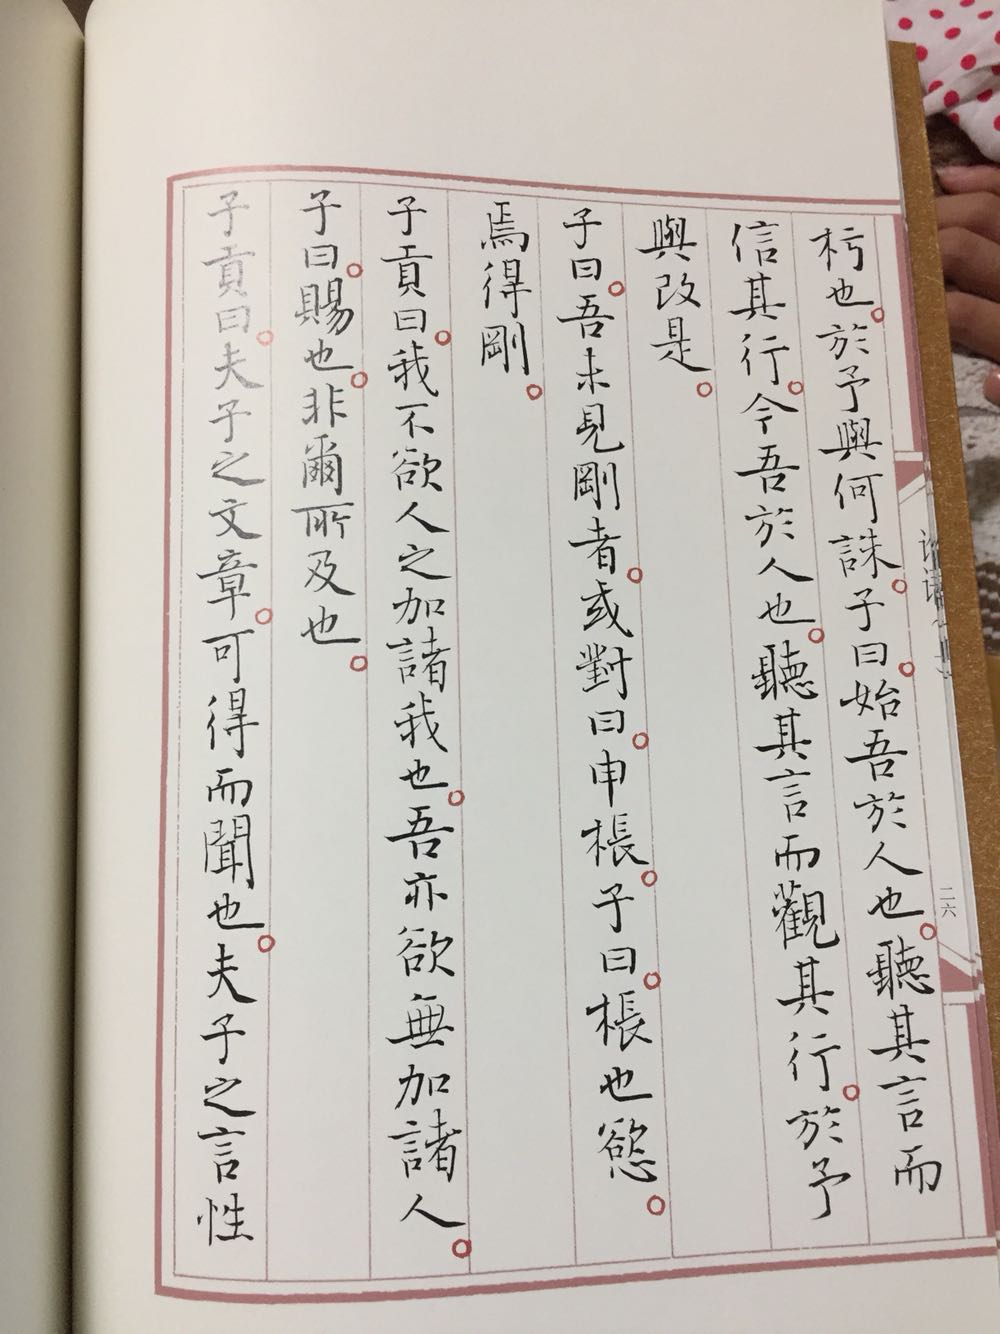 非常好，孙晓云的小行楷还是值得看的，而且作为论语读物也很棒。